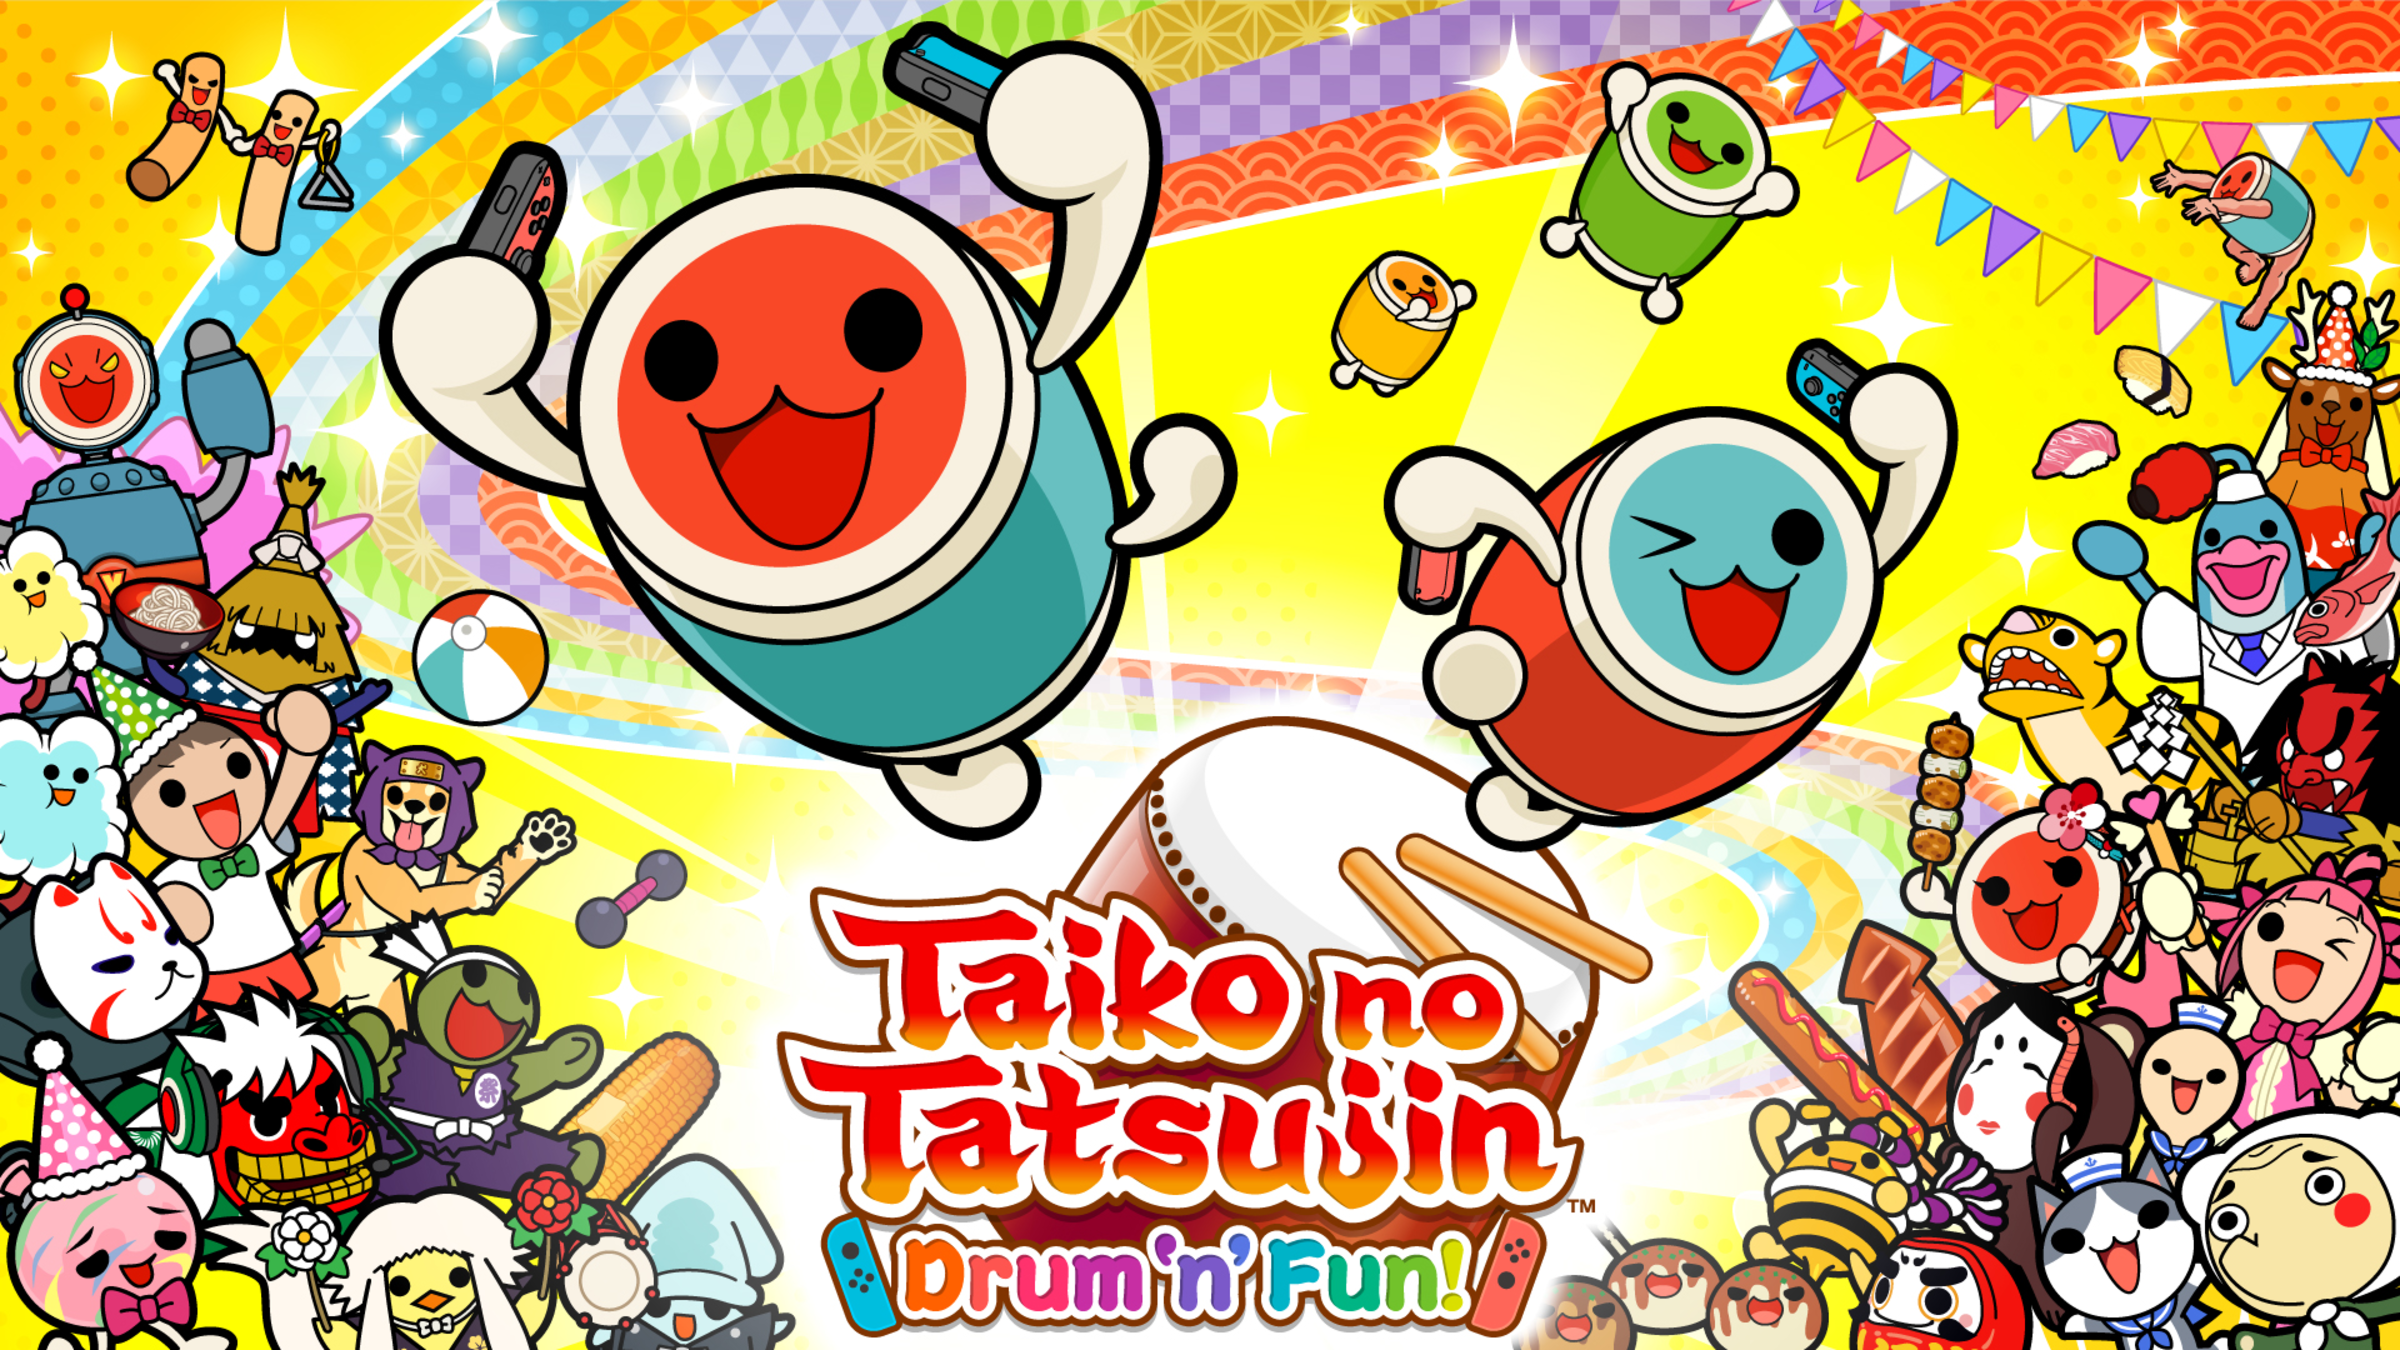 Taiko no Tatsujin: Drum 'n' Fun! for Nintendo Switch - Nintendo Official Site $9.99